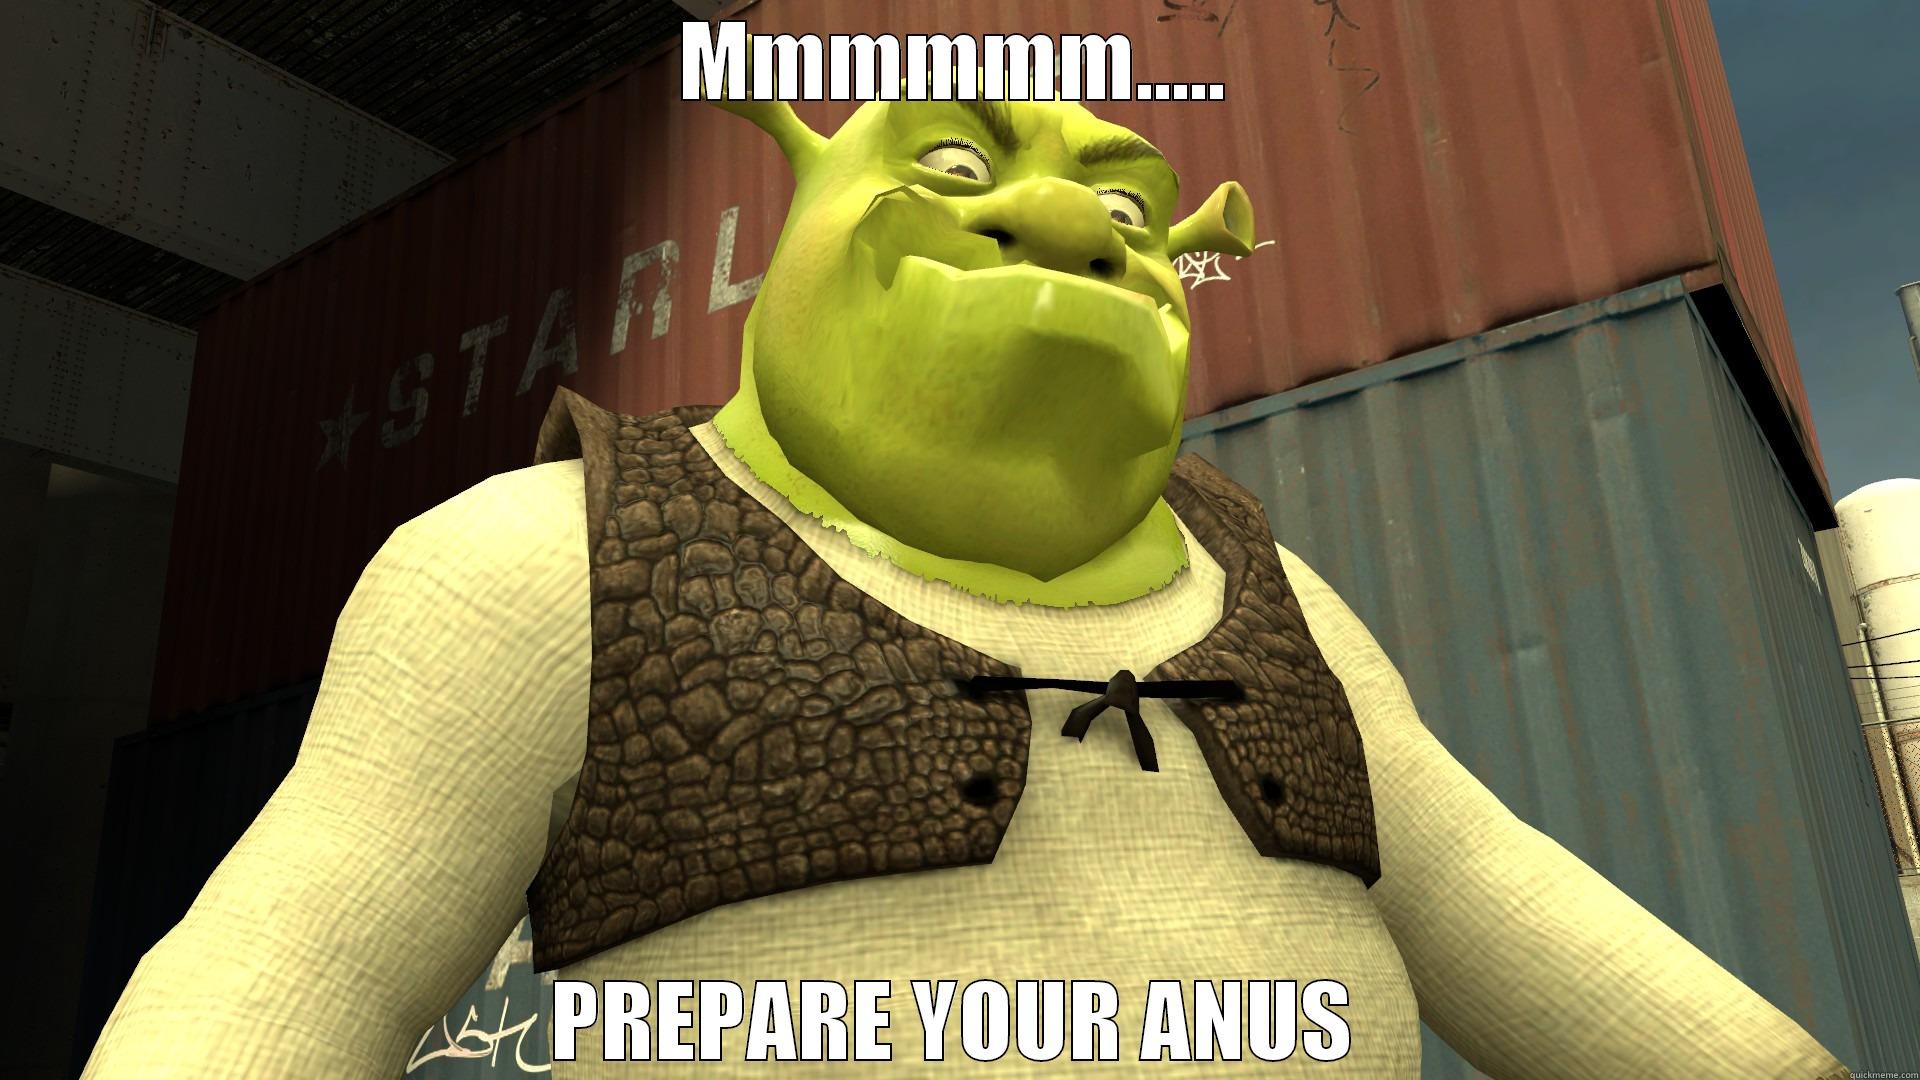 Relatable Memes Relatable Memes Shrek Funny Shrek Memes Shrek Images